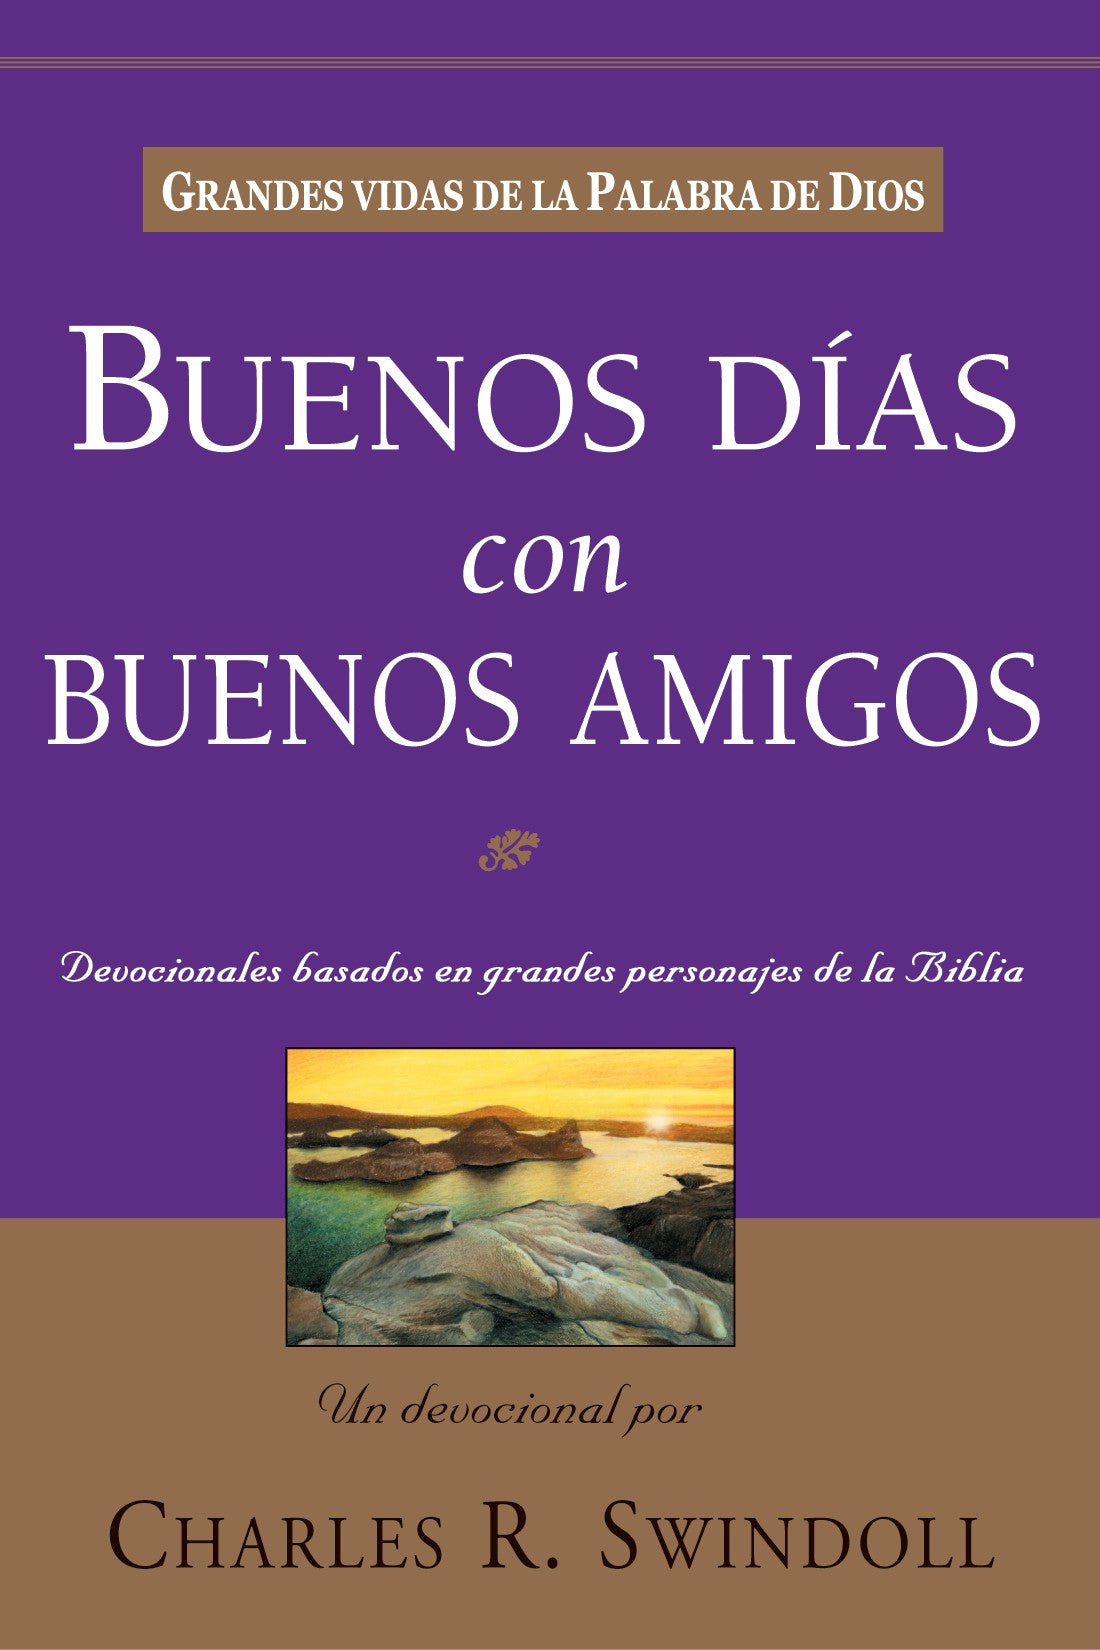 Buenos Días con Buenos Amigos - Librería Libros Cristianos - Libro